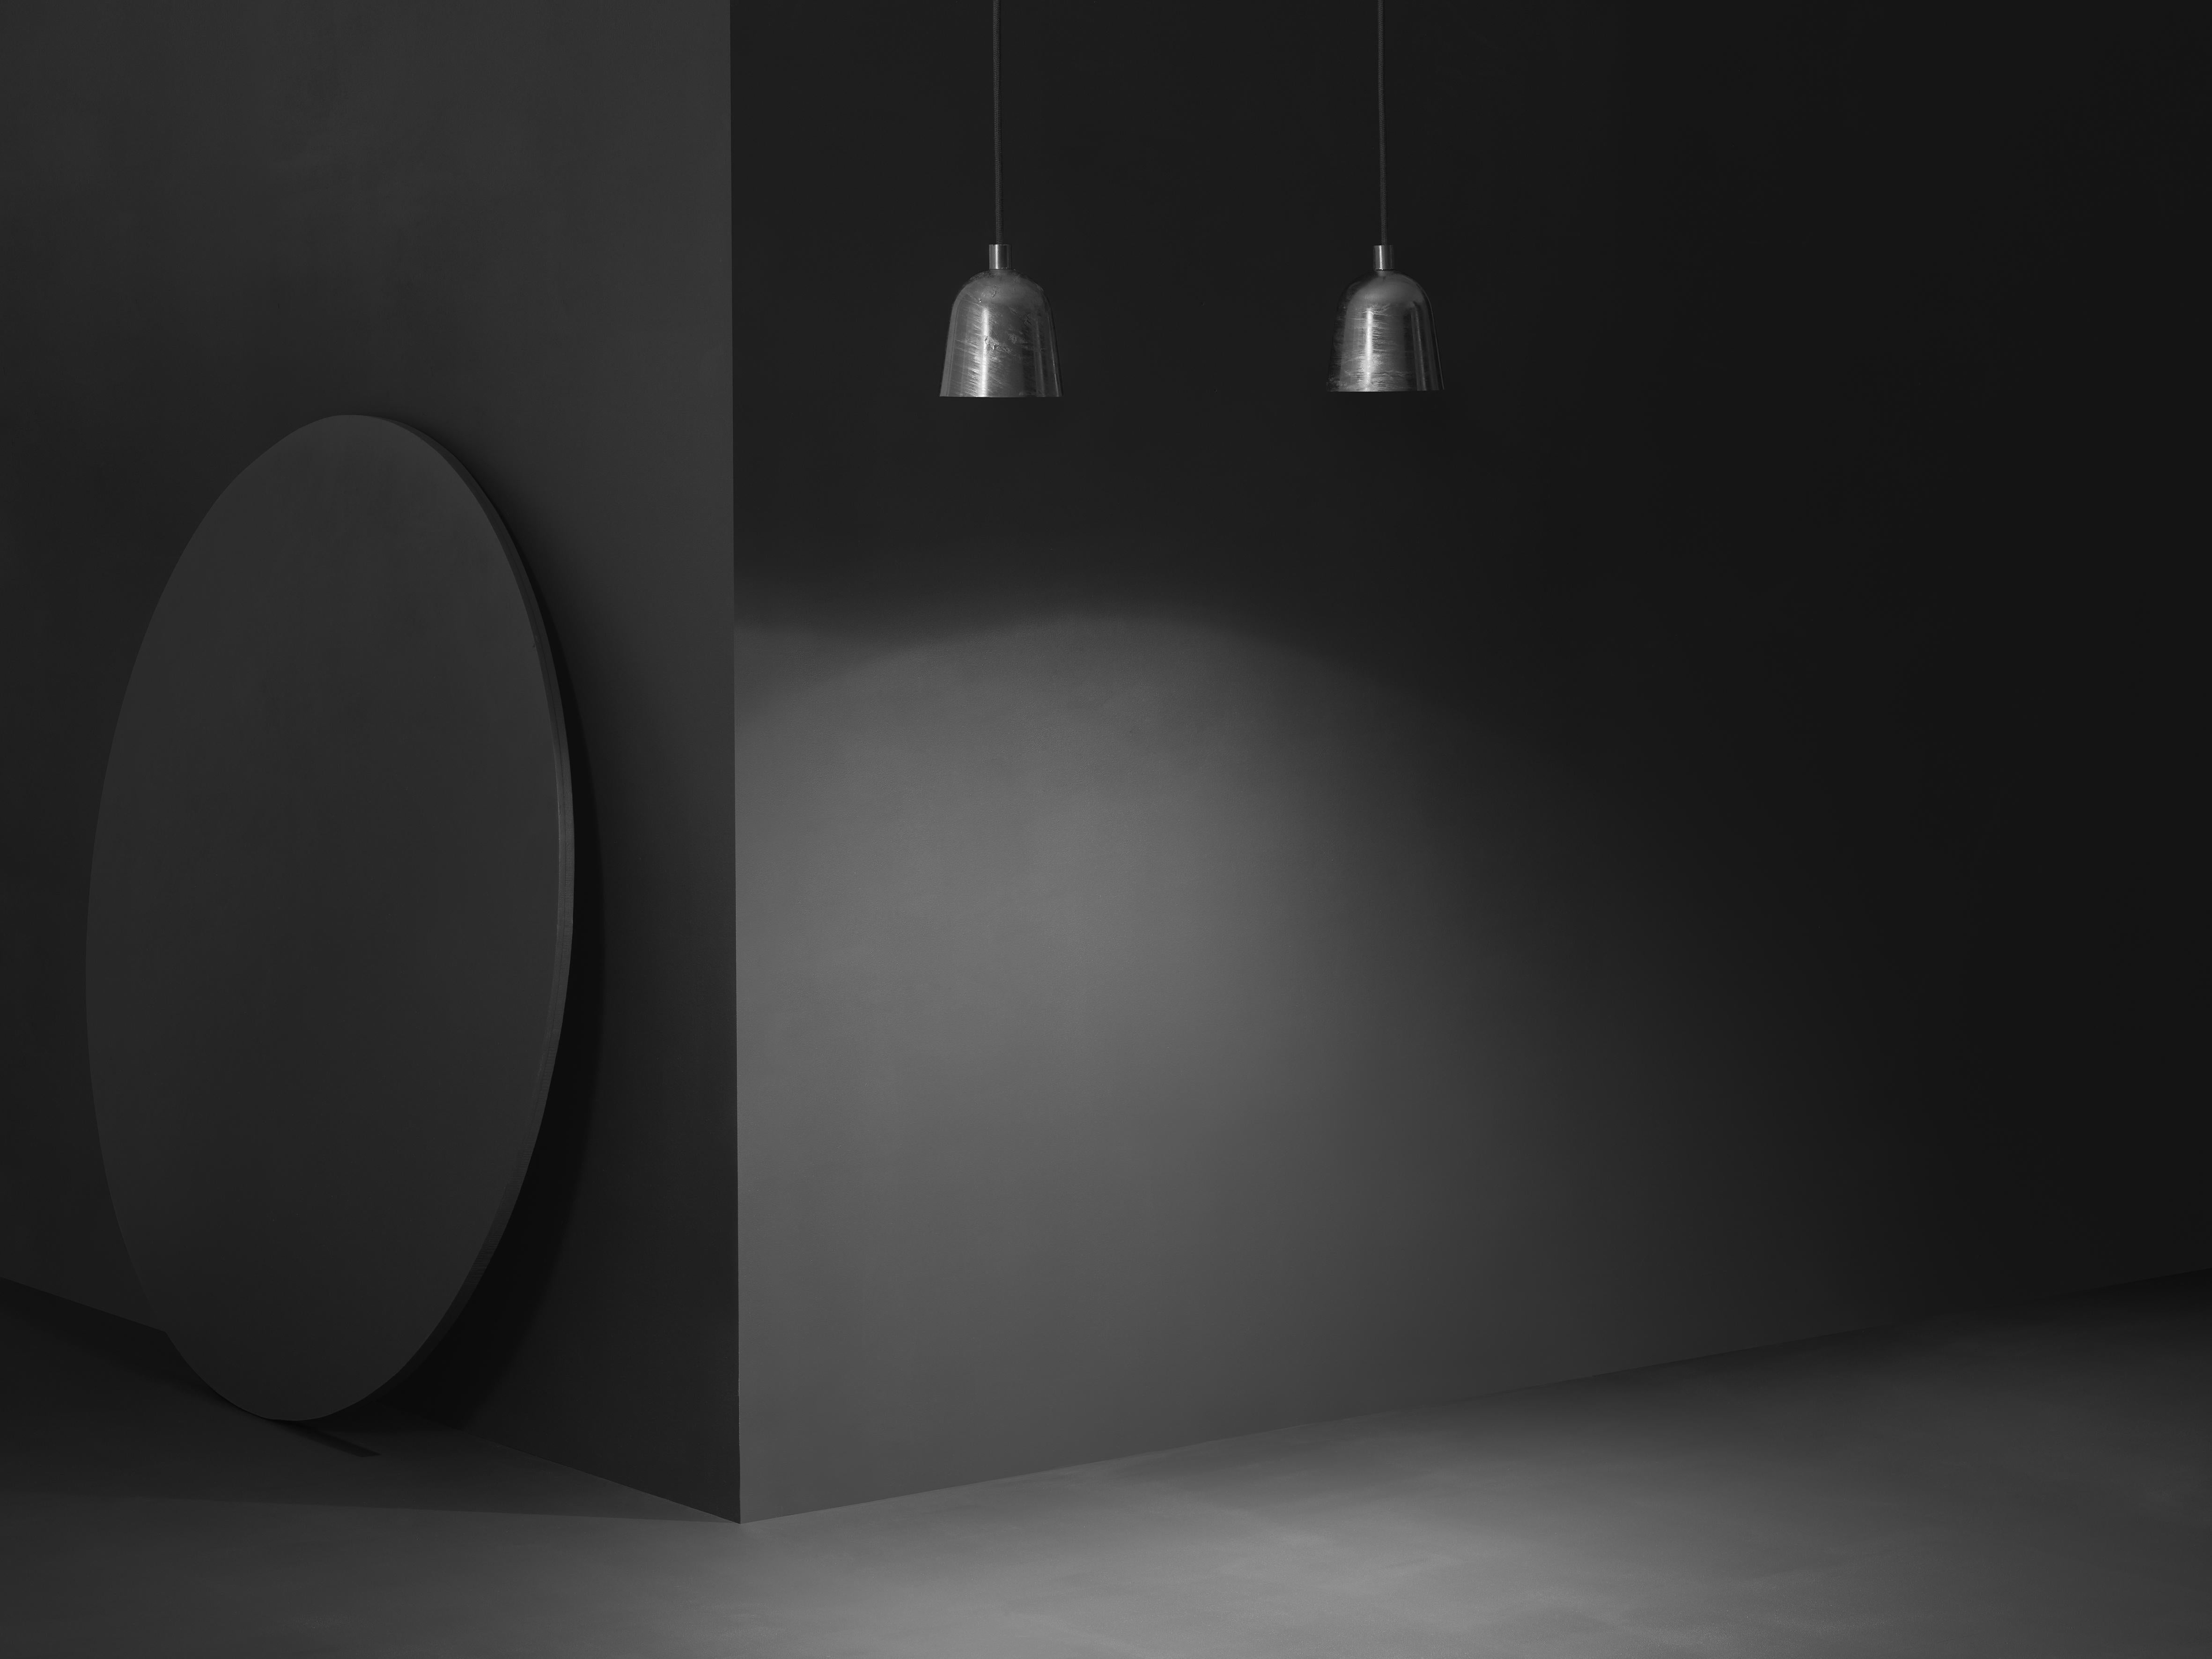 Die konvexe Mini-Hängeleuchte aus lackiertem Metall wurde von Jens Fager für Zero Lighting entworfen. Die konvexe Leuchte, deren kegelförmiger Schirm von einer einfachen Schnur herabhängt, ist die Antwort der modernen Architektur auf die Frage, wie